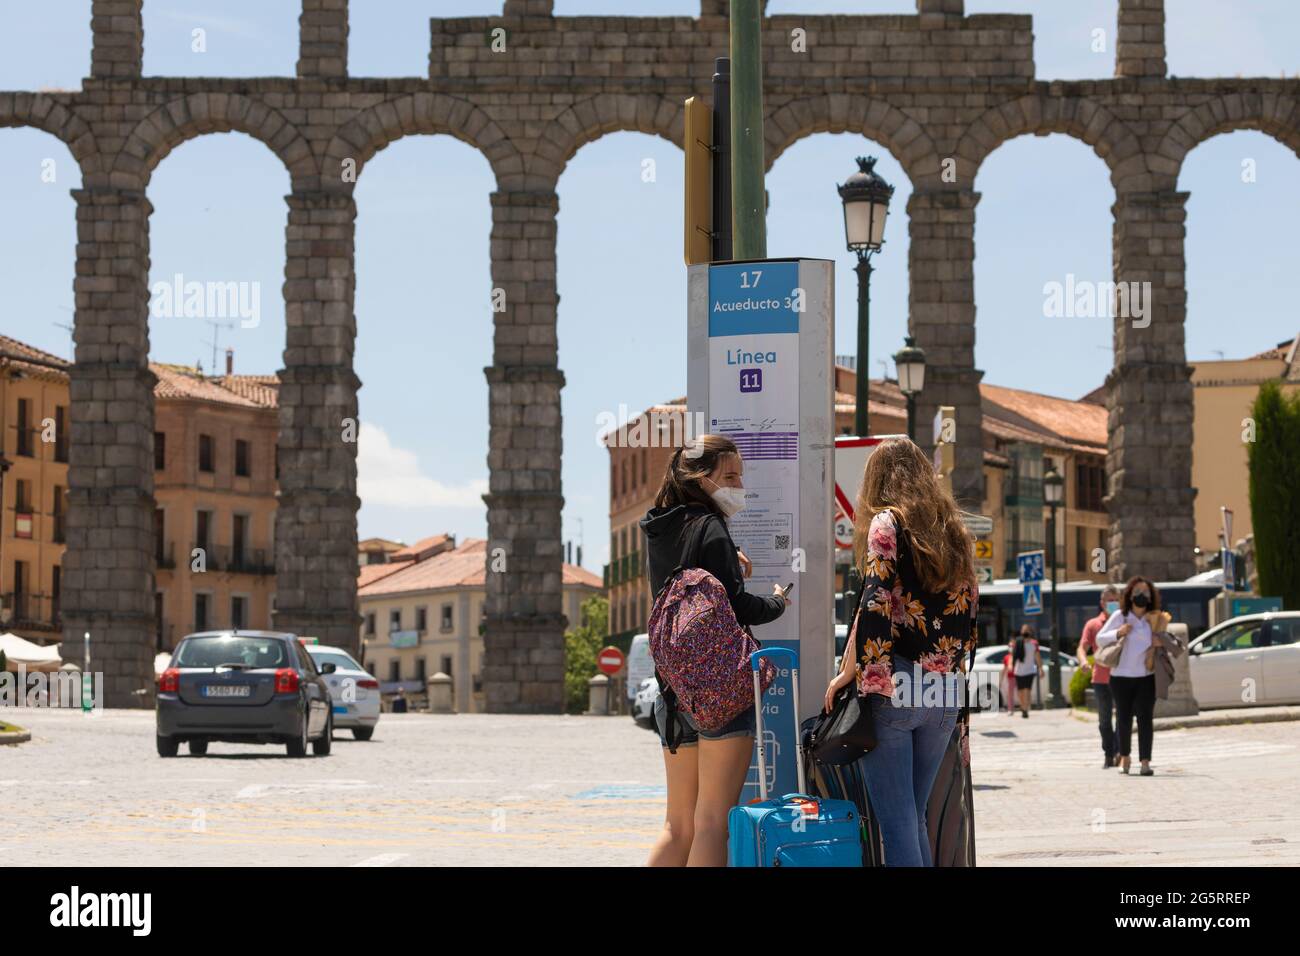 Segovia, España - 2 de junio de 2021: Dos jóvenes esperan en una parada de autobús con sus maletas, cerca del Acueducto de Segovia, para ir a la estación de tren Foto de stock